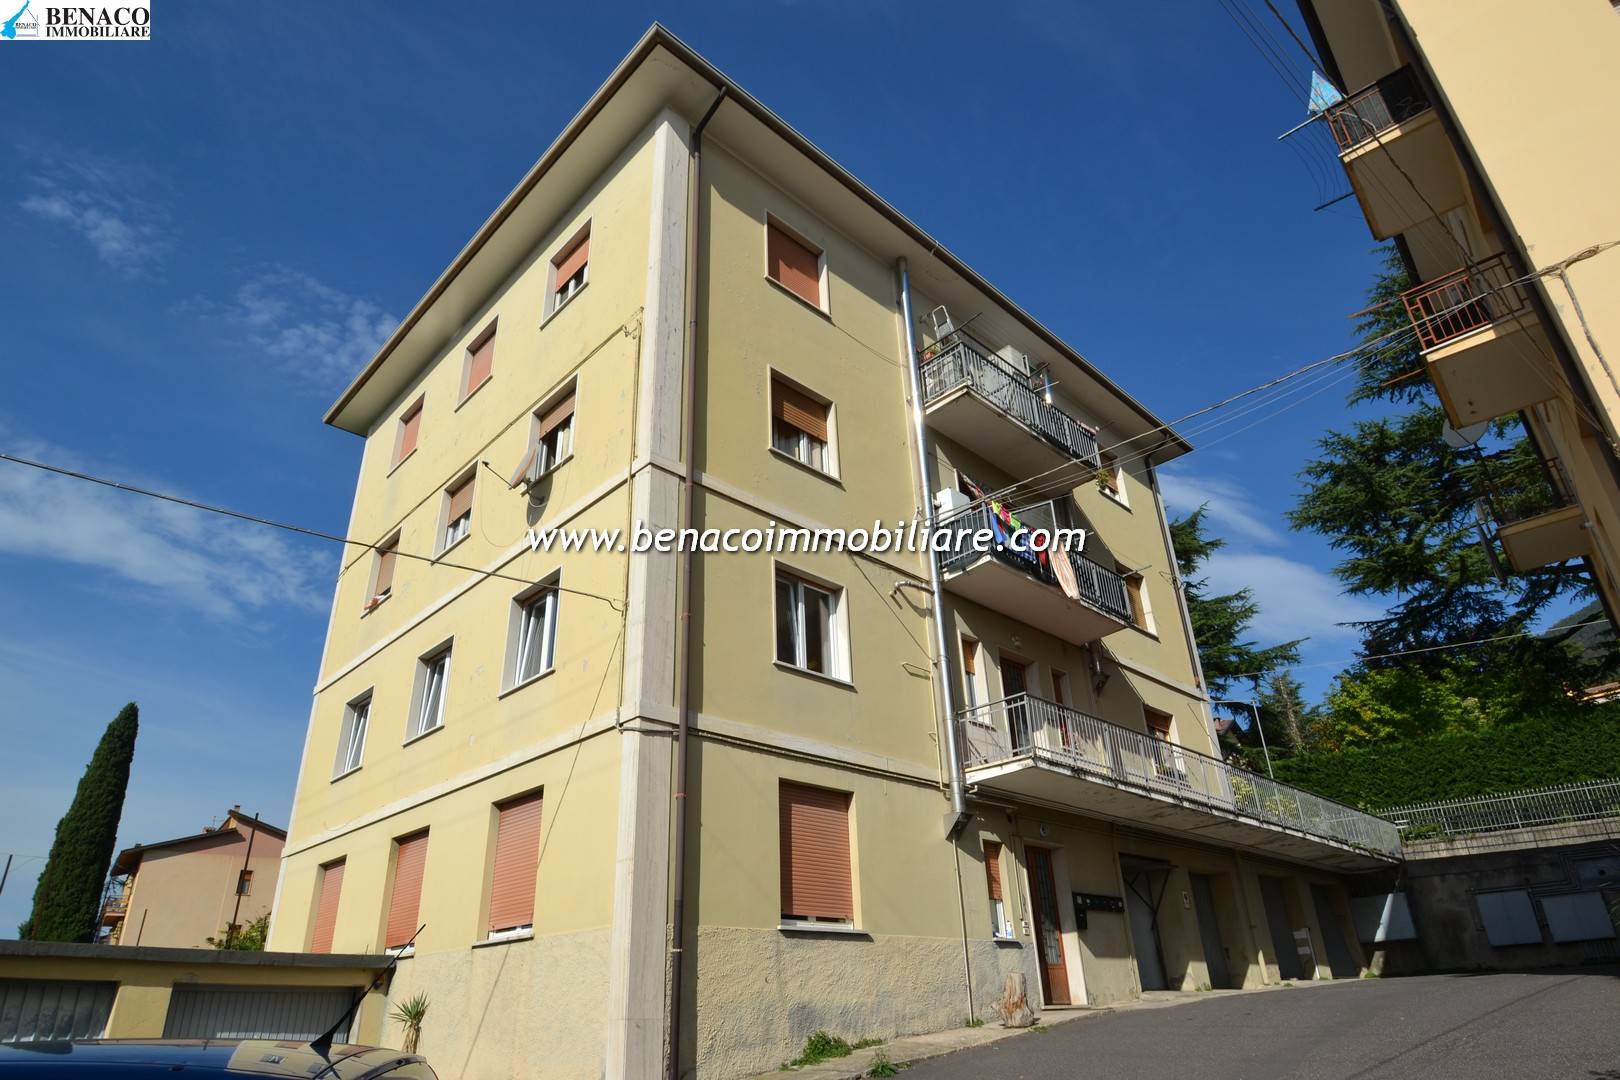 Appartamento in vendita a Caprino Veronese, 4 locali, prezzo € 160.000 | PortaleAgenzieImmobiliari.it